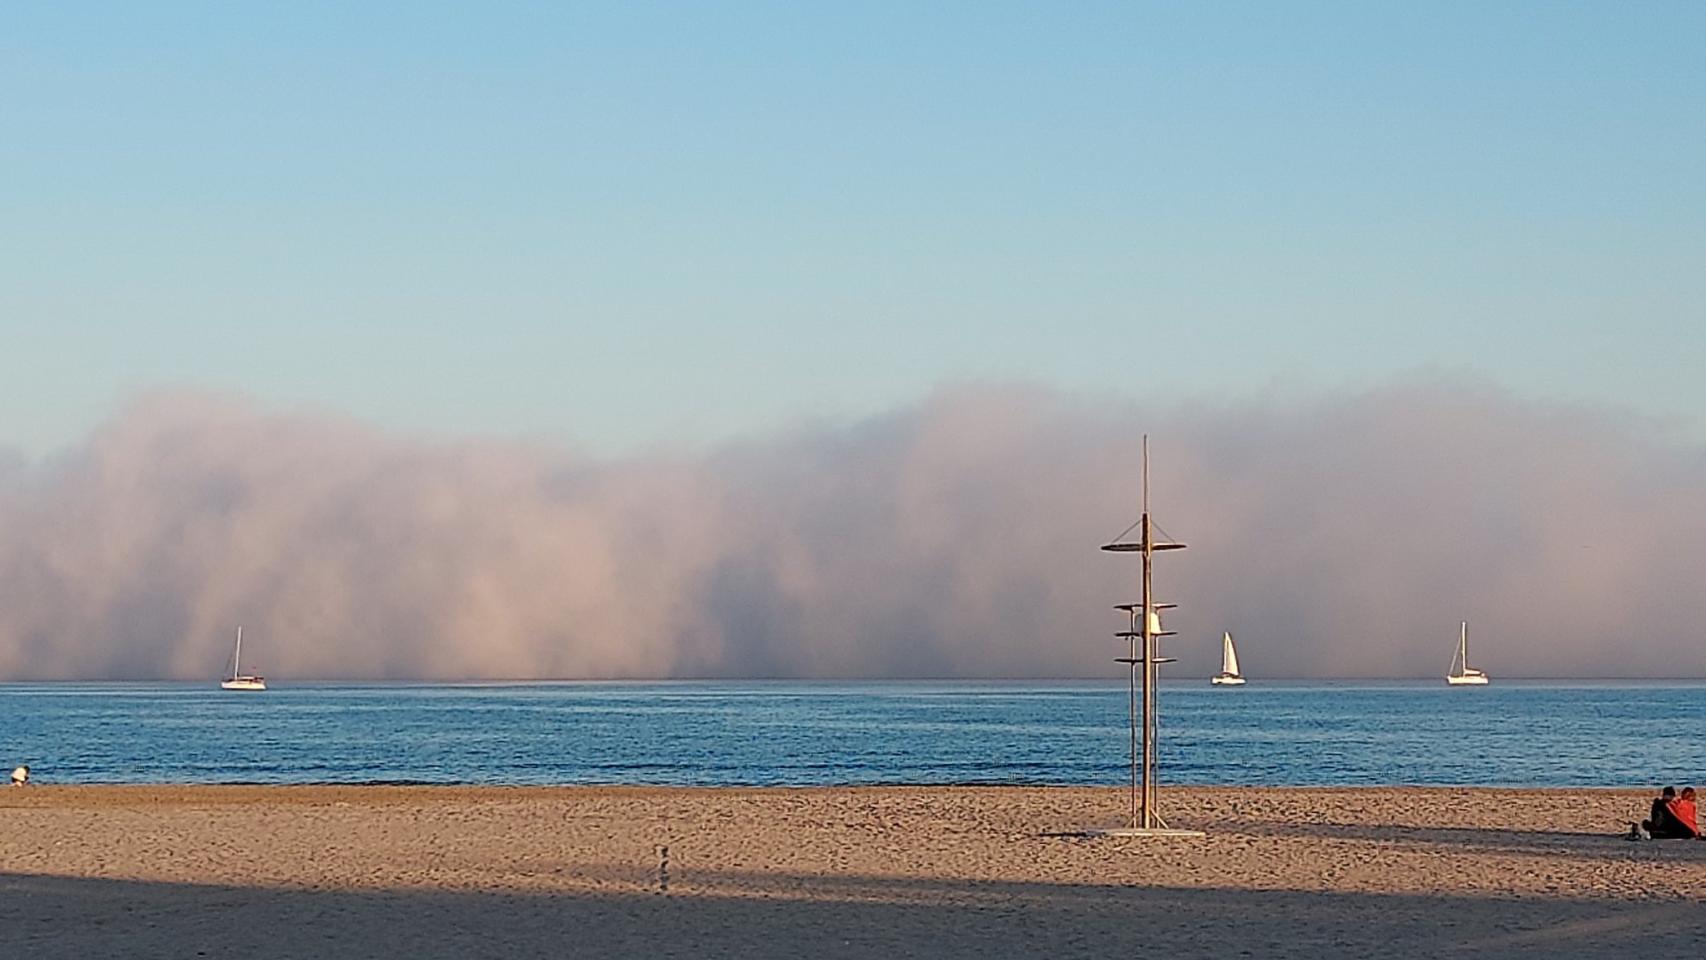 Banco de niebla a su llegada este domingo a la playa de Pinedo (Valencia). @cab_carmen